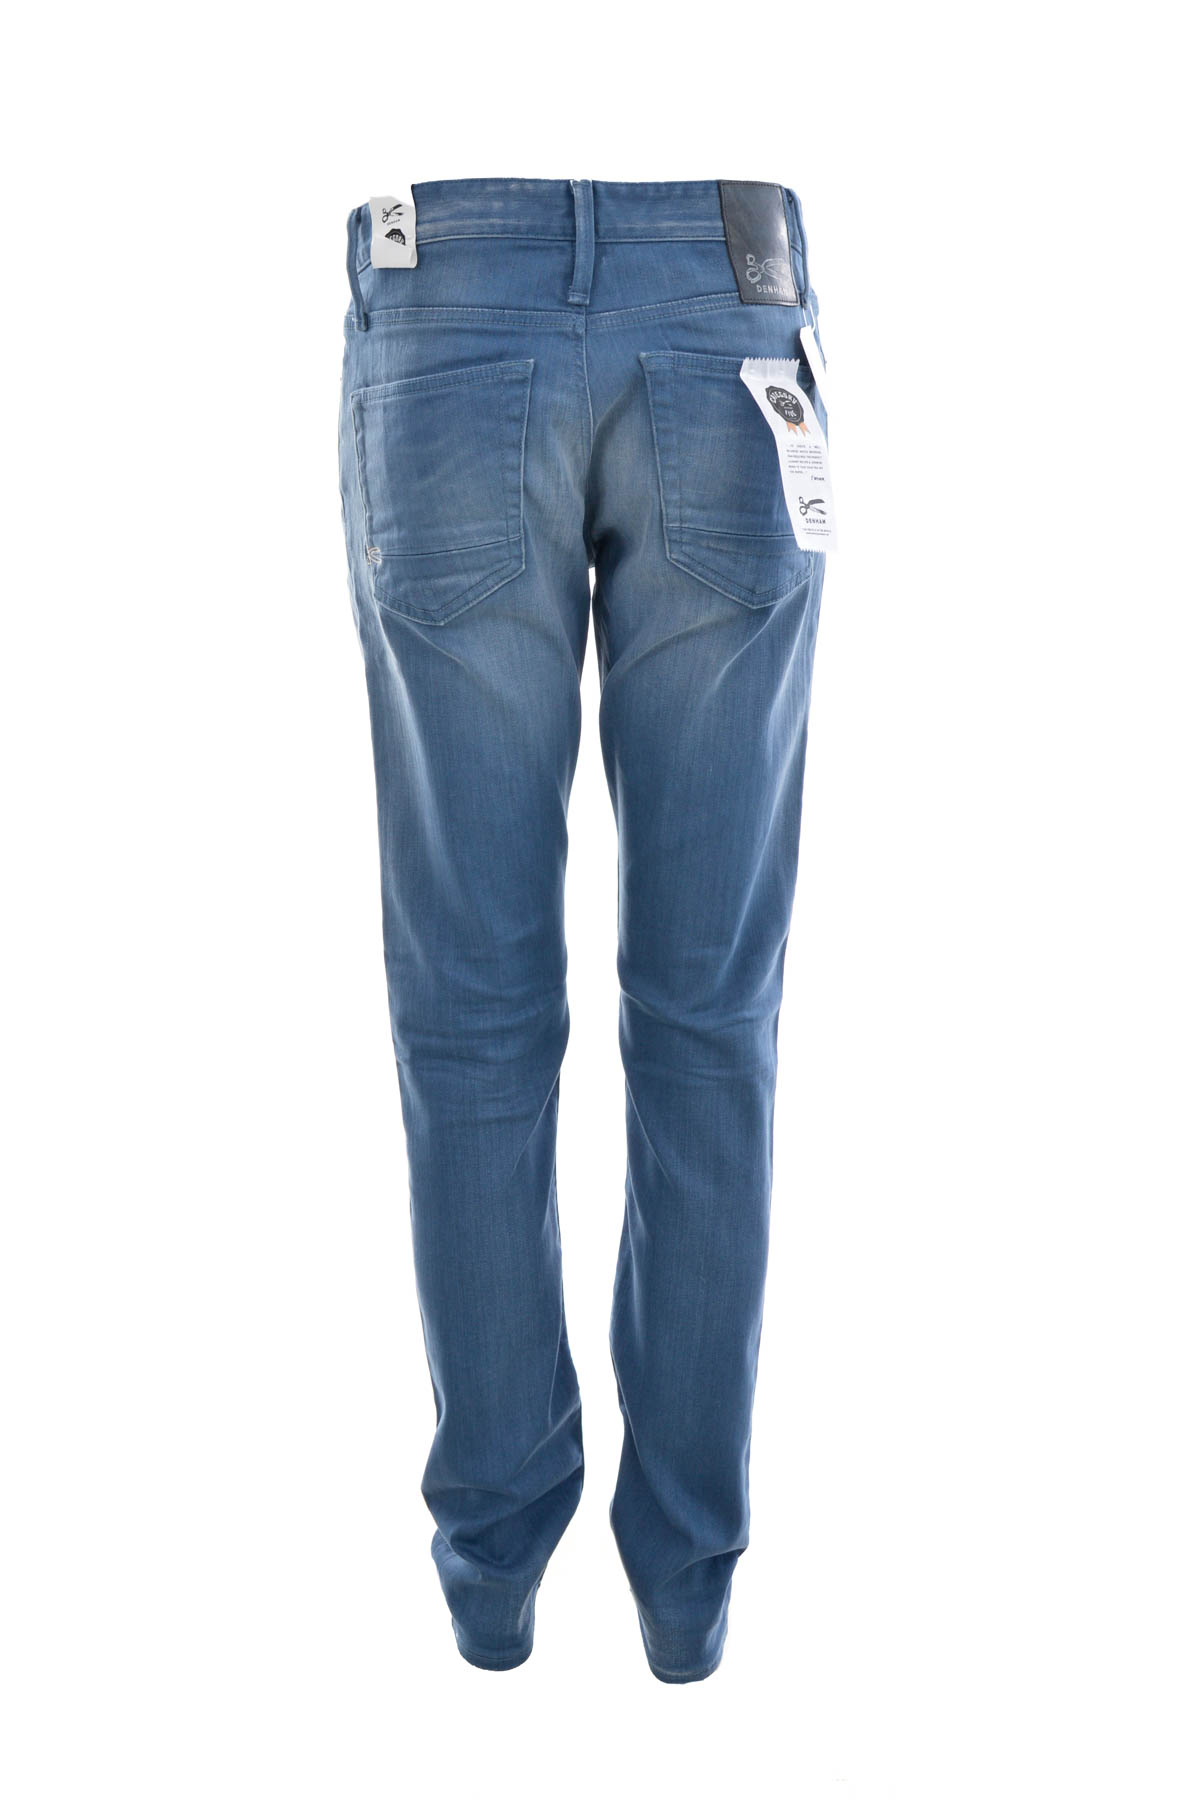 Men's jeans - DENHAM - 1